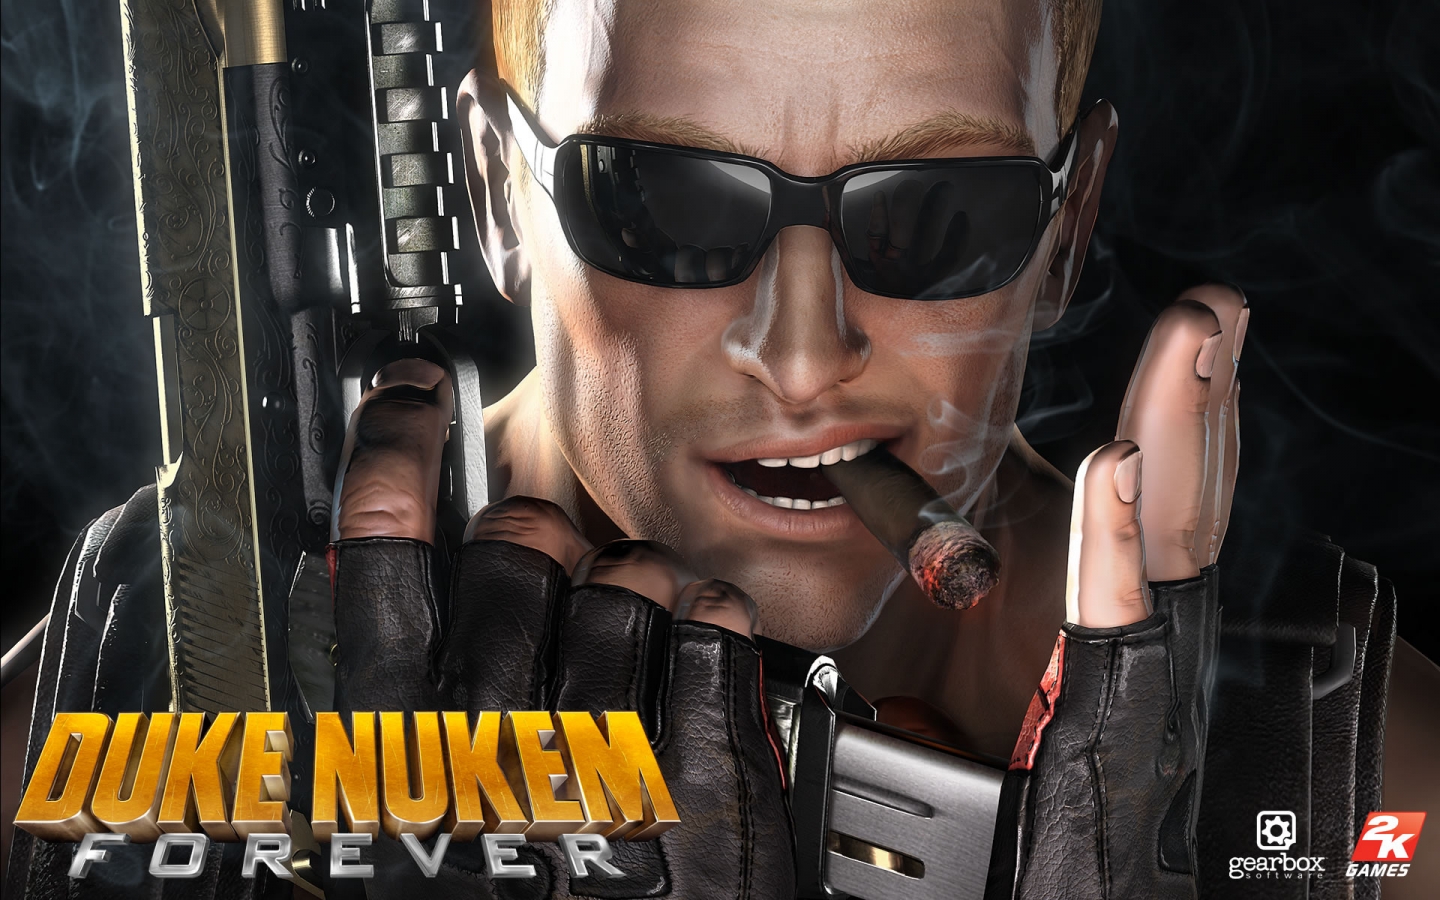 Duke Nukem Forever for 1440 x 900 widescreen resolution